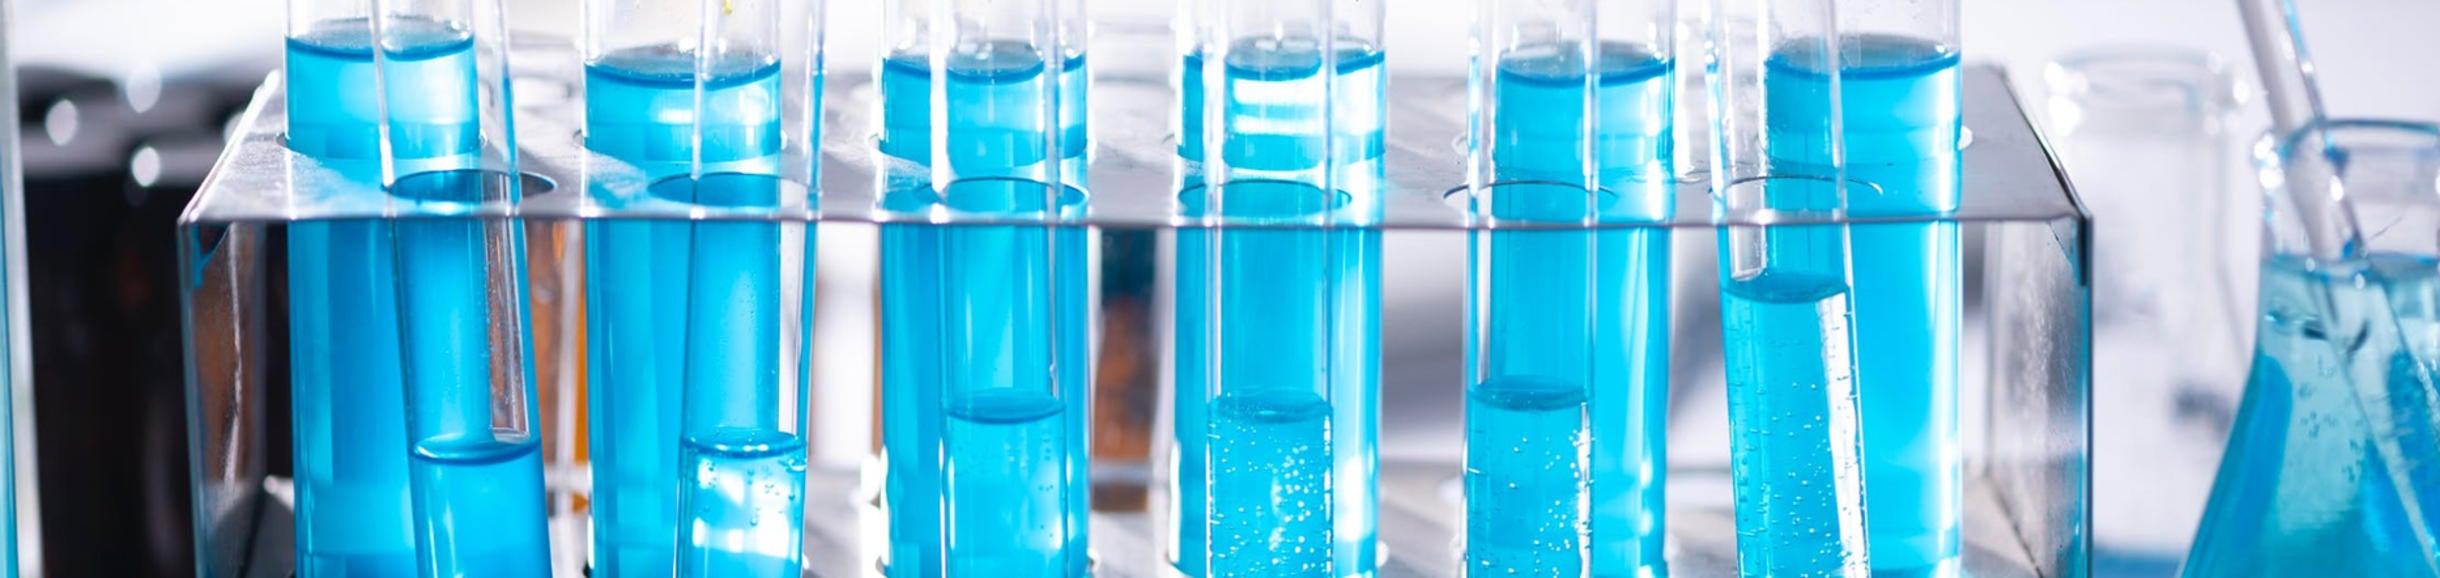 Pexels- Science Blue Lab Tubes